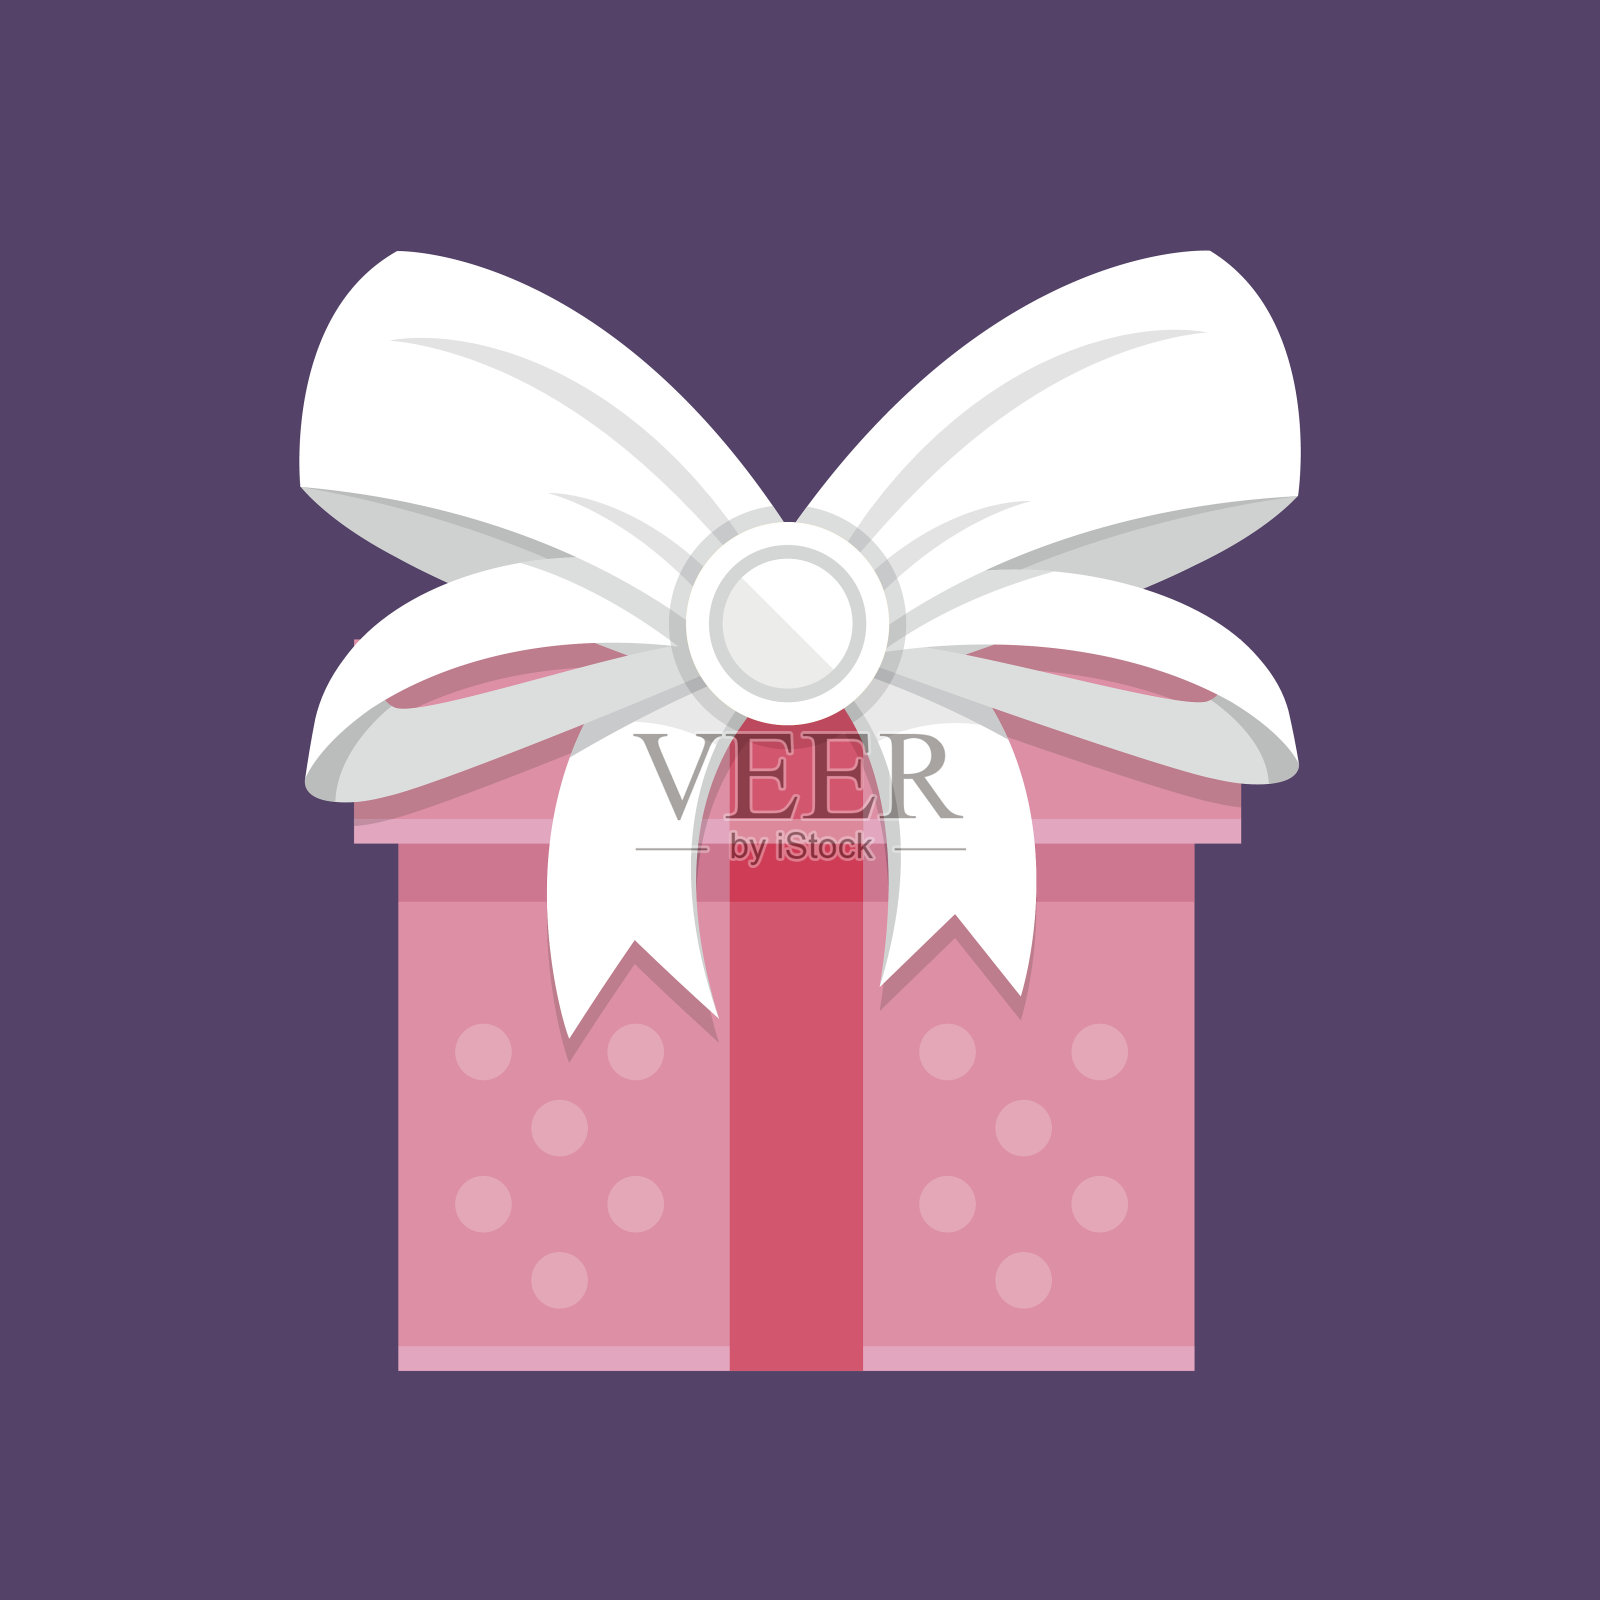 粉色礼盒，白色蝴蝶结。节日礼品，礼盒，礼品概念。现代平面设计矢量图标插画图片素材